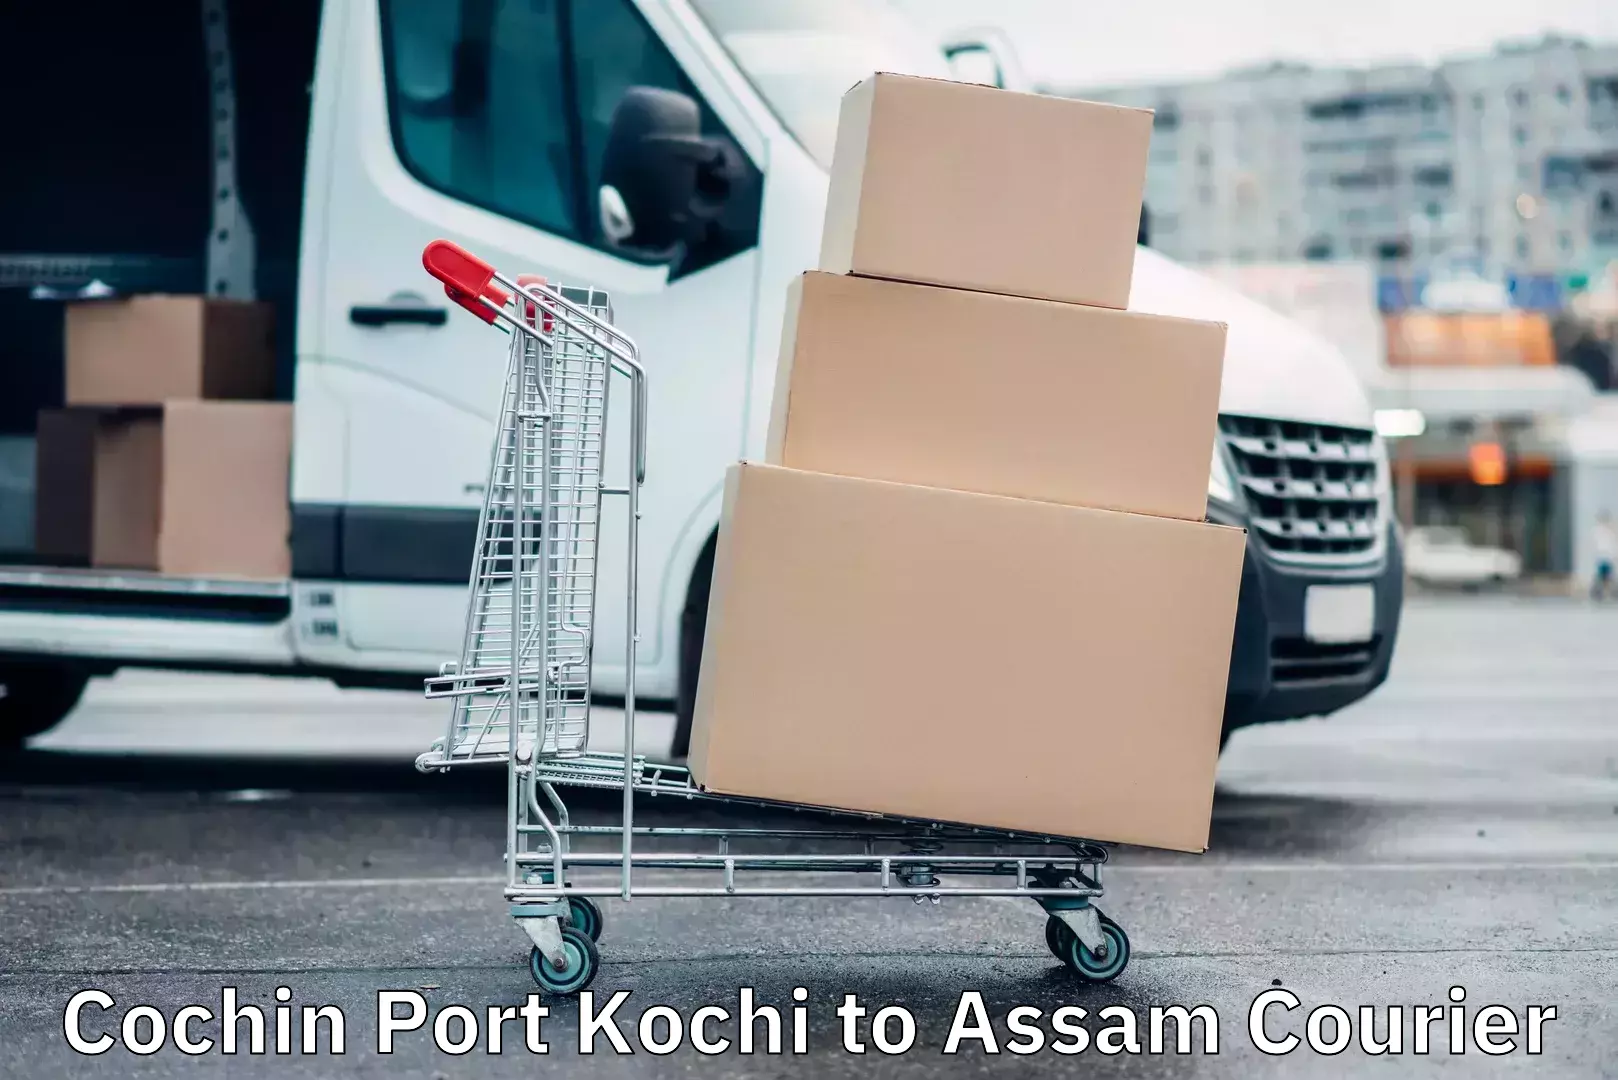 Weekend courier service Cochin Port Kochi to Assam